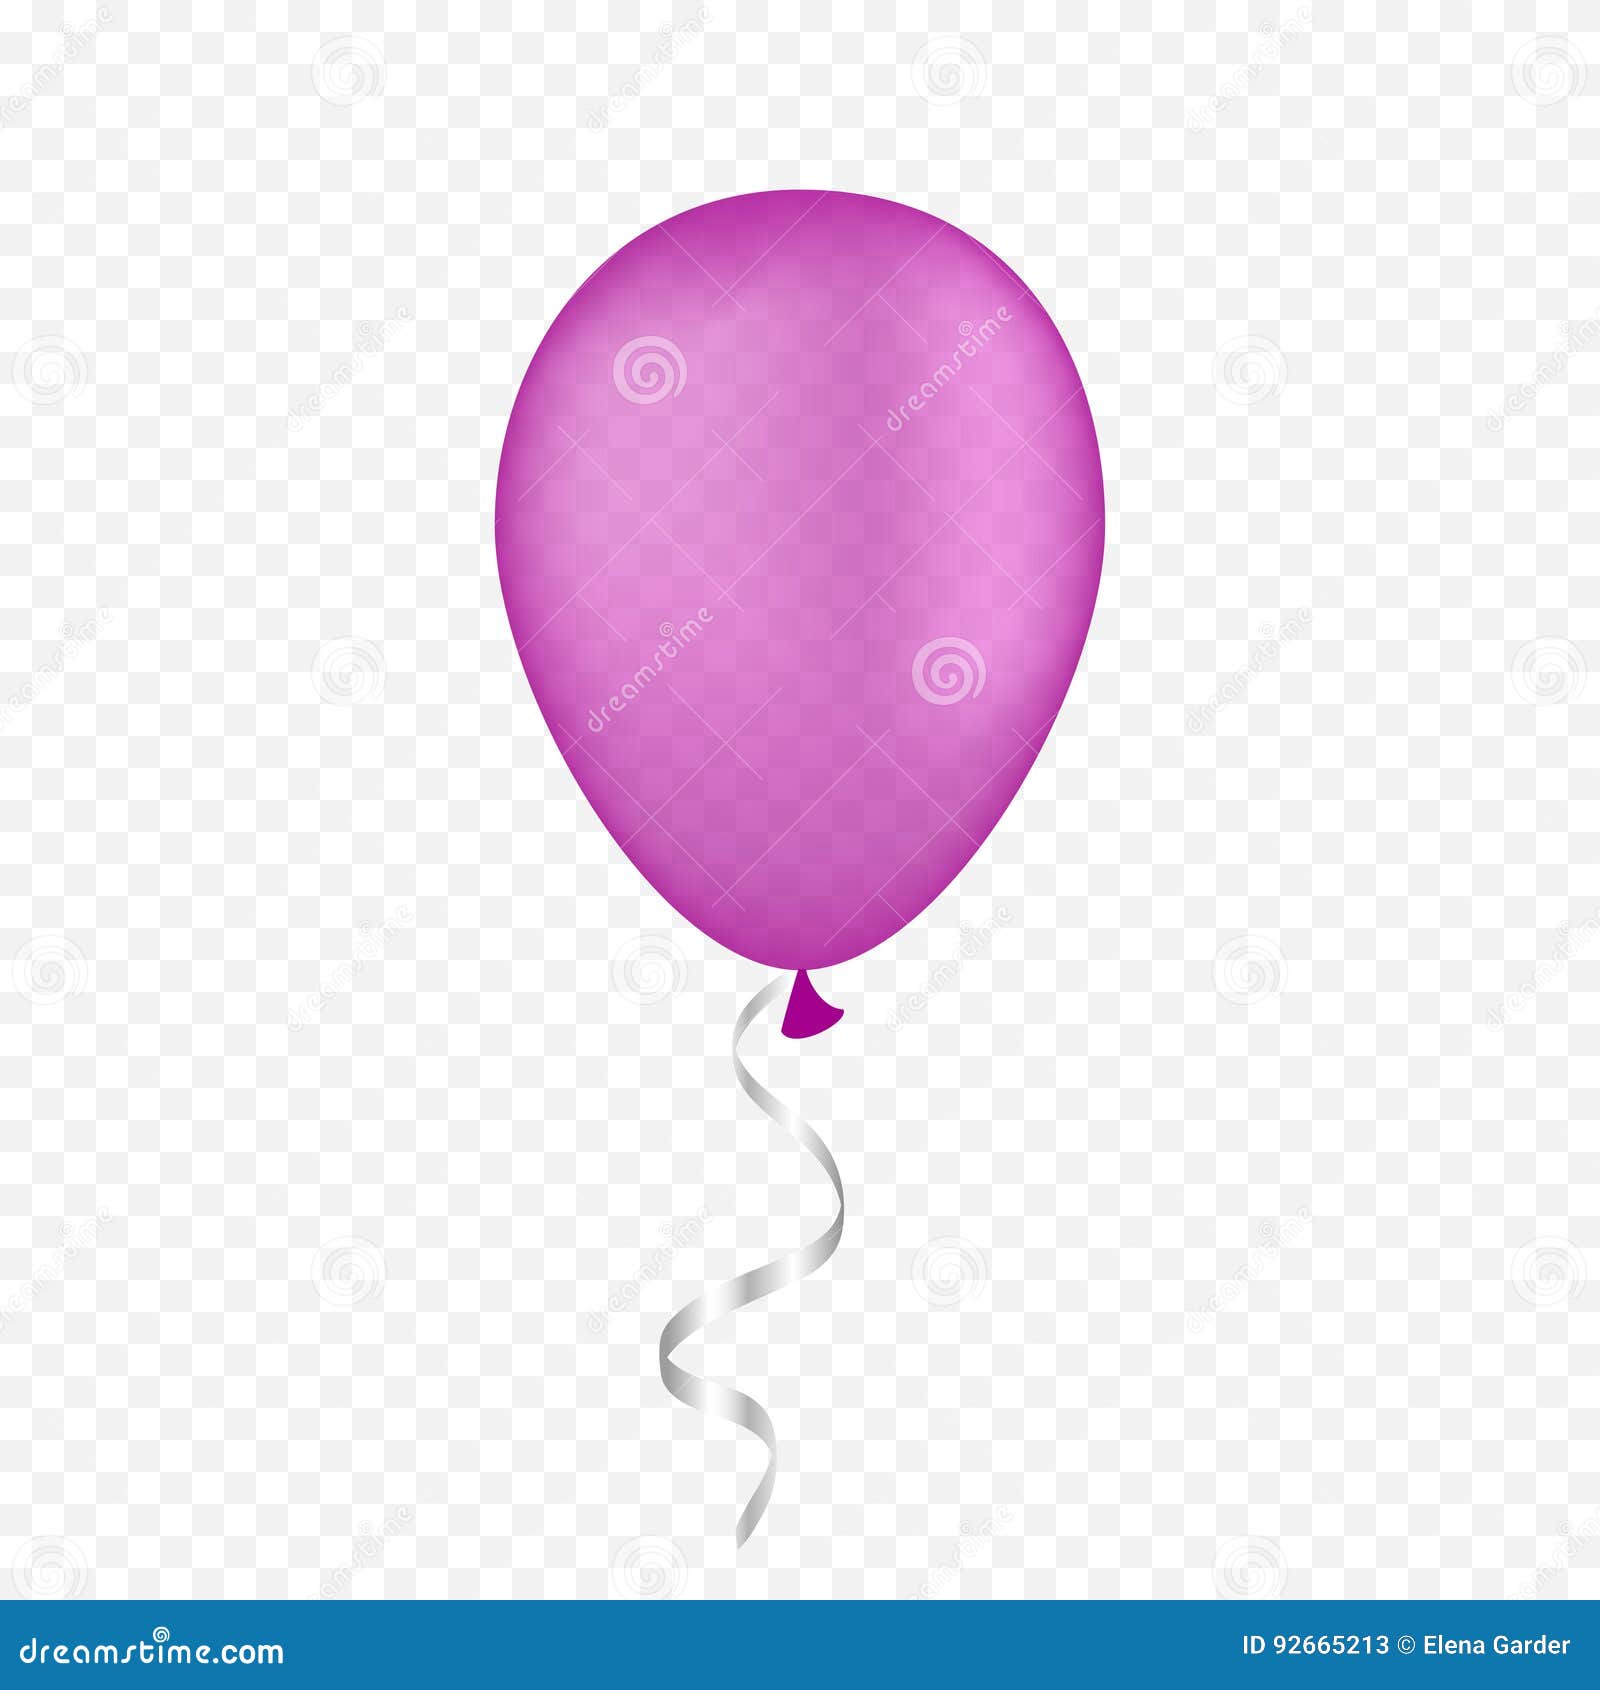 Vector Witte Ballon Op Een Transparante Achtergrond 3d Realistische  Gelukkige Vakantie Die De Ballon Van Het Luchthelium Vliegen Stock  Illustratie - Illustration of feestelijk, schoon: 92665213